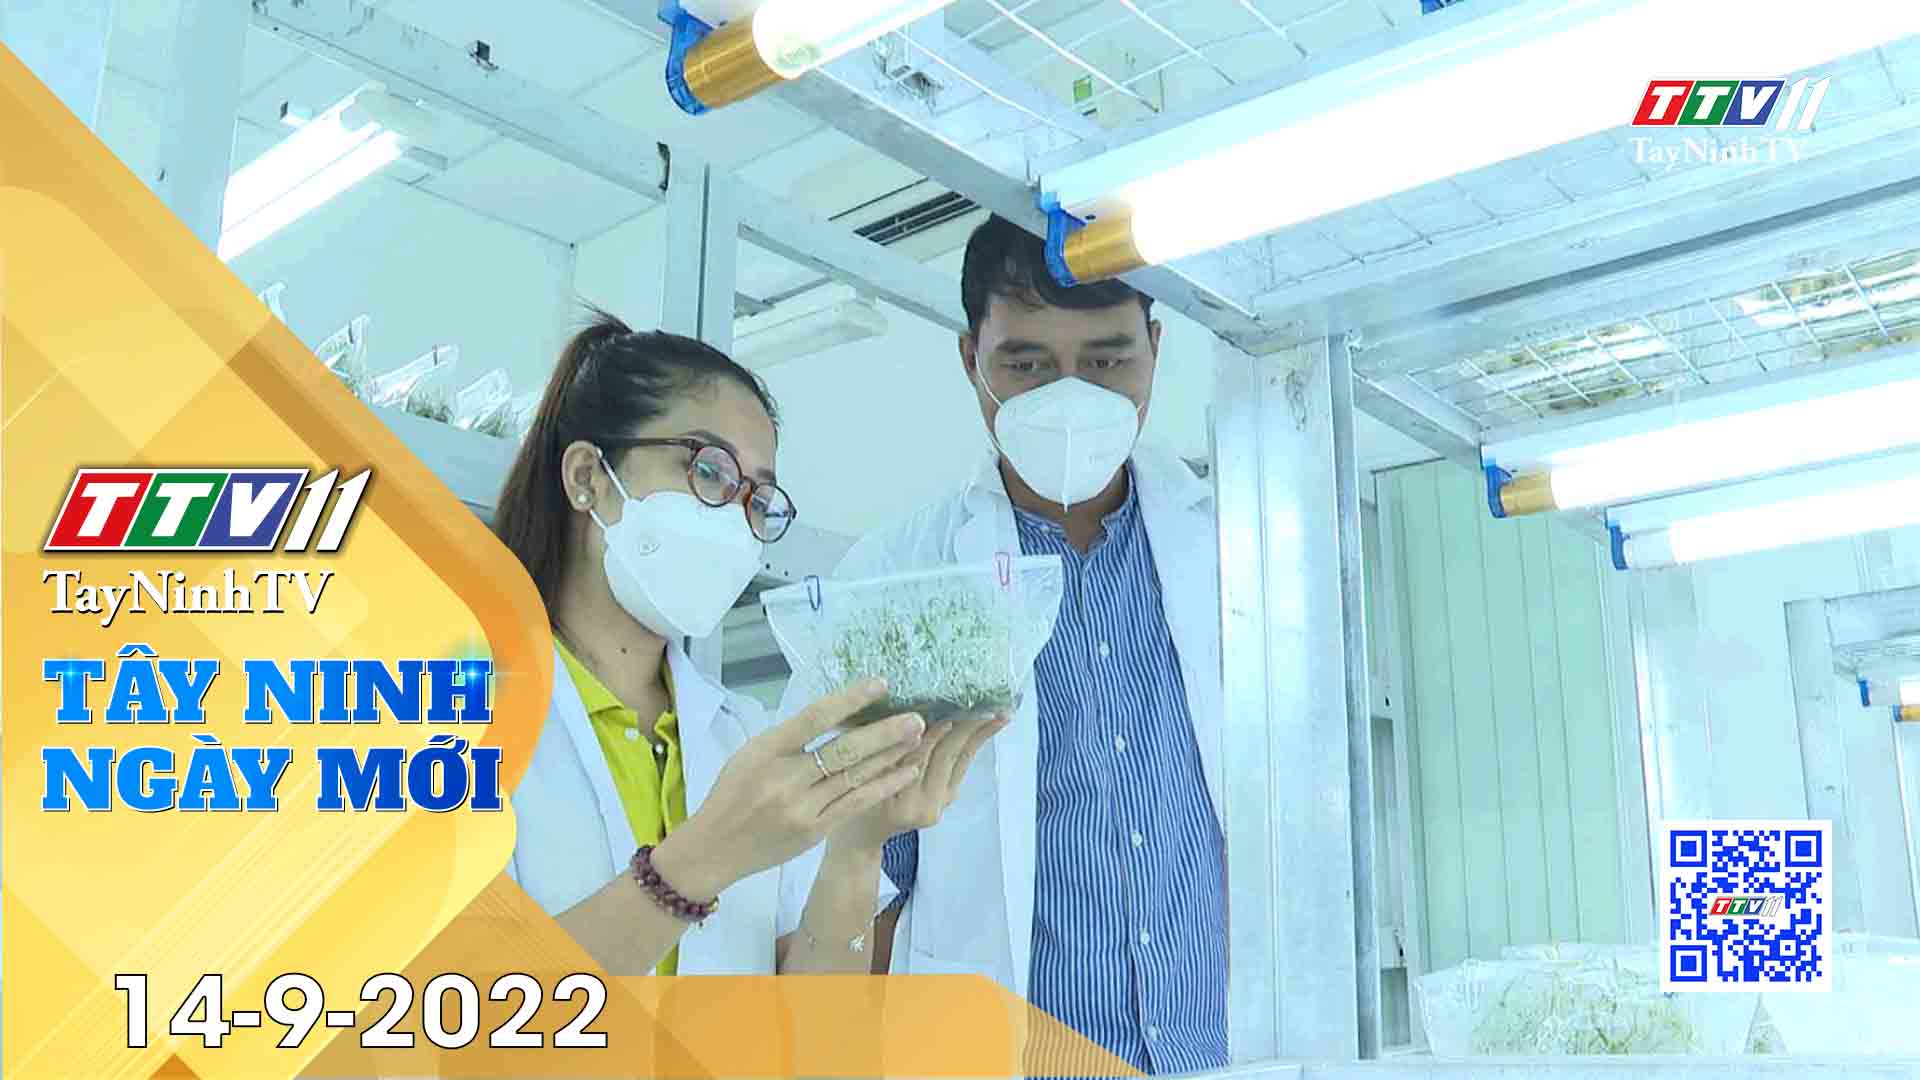 Tây Ninh ngày mới 14-9-2022 | Tin tức hôm nay | TayNinhTV